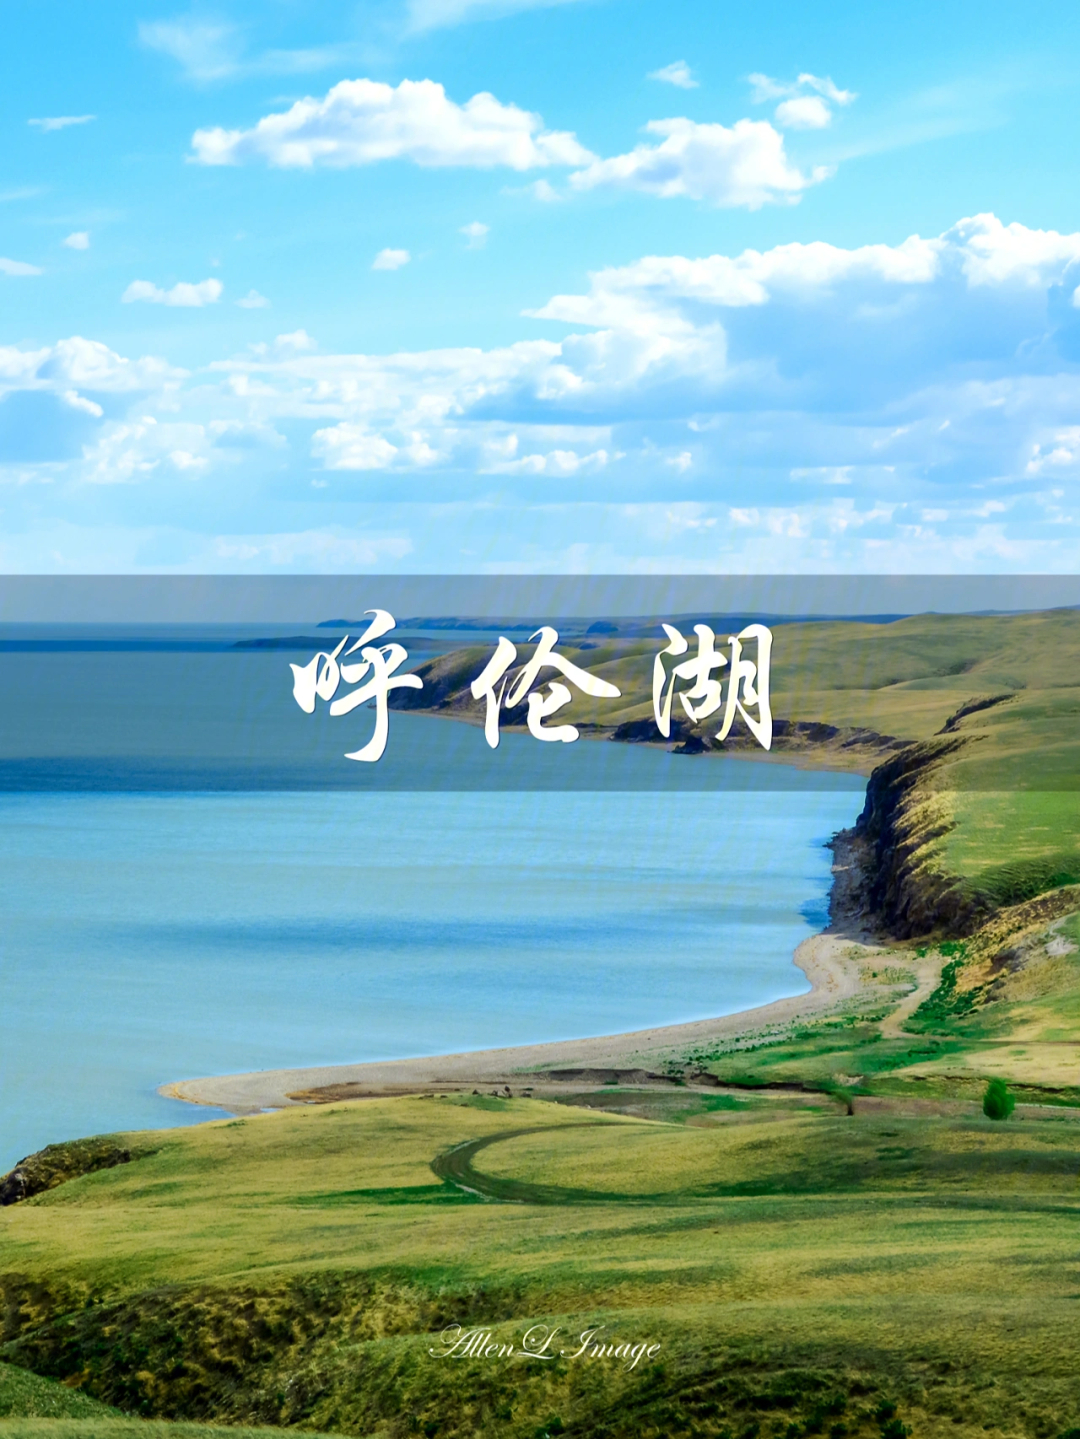 内蒙古自治区 第一大湖泊,一颗晶莹硕大的明珠,镶嵌在#呼伦贝尔大